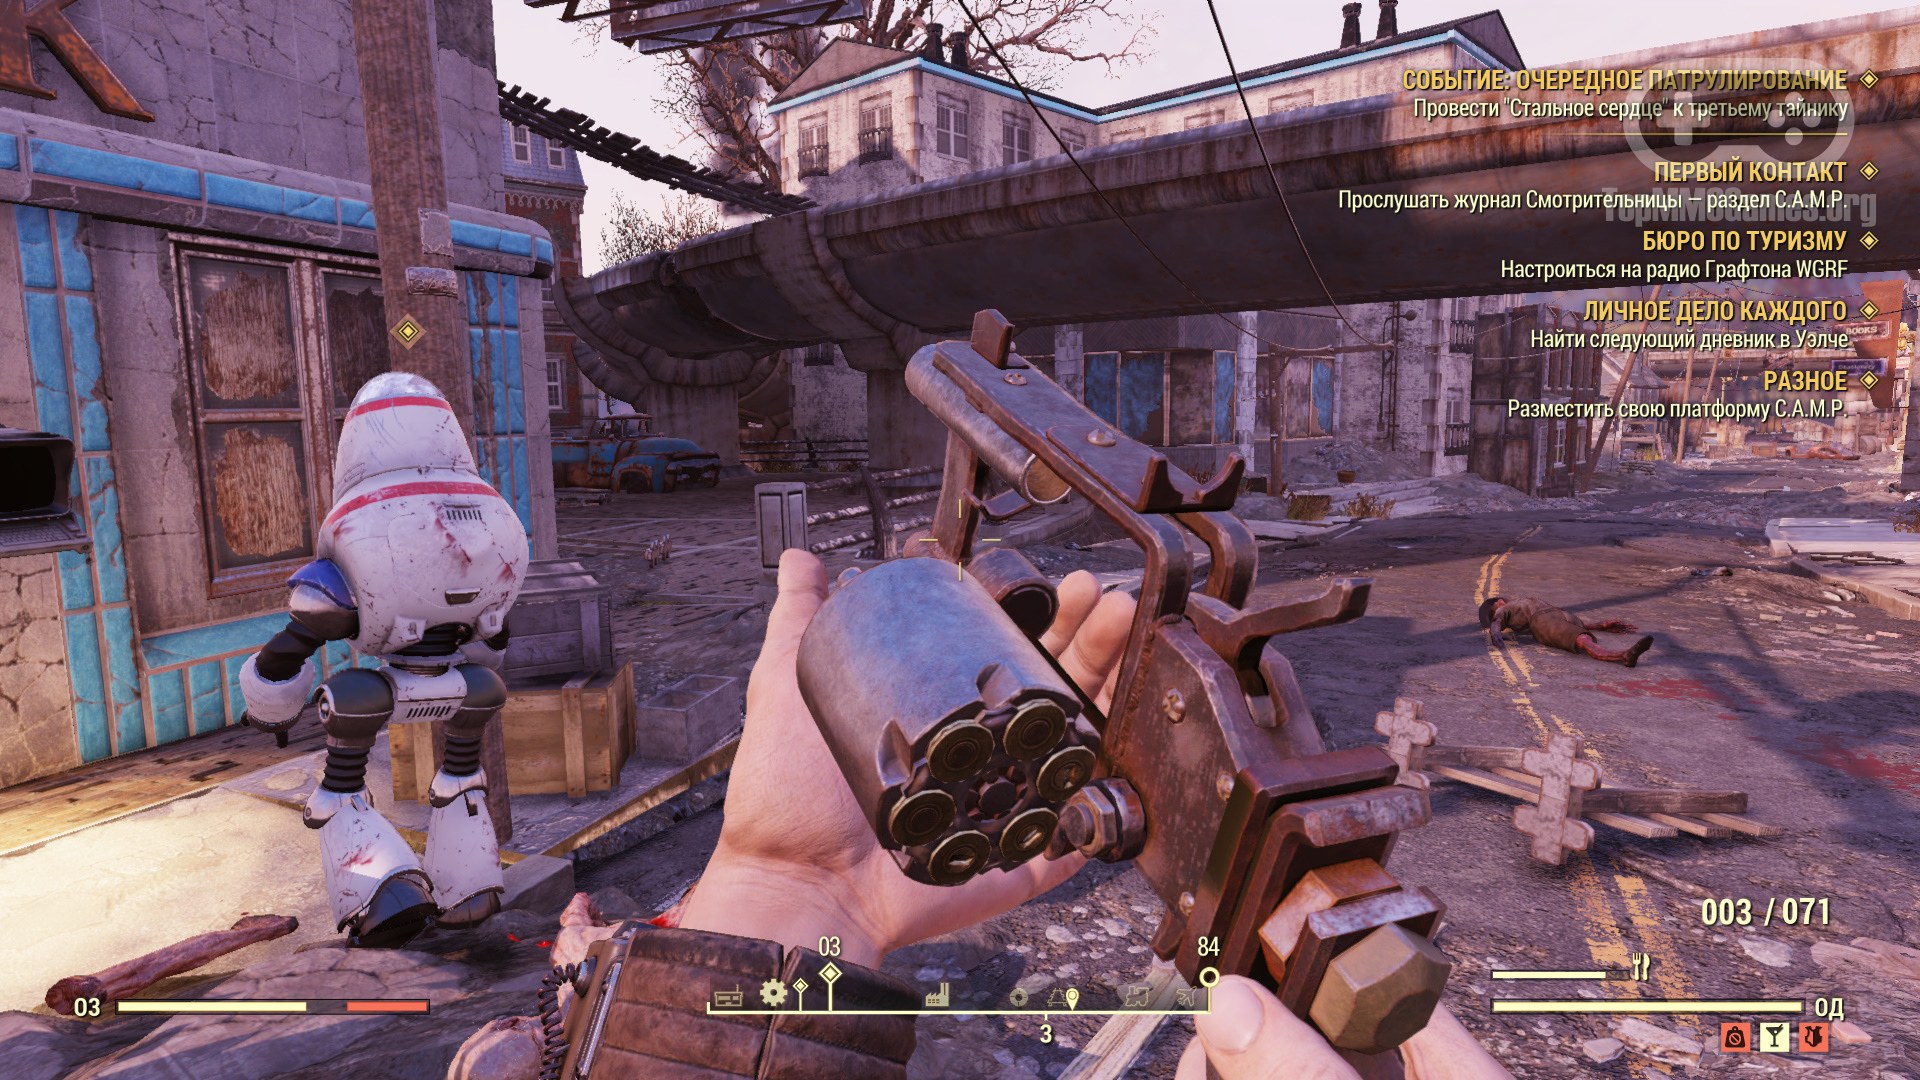 Скриншоты Fallout 76, 155 картинок из онлайн игры Фоллаут 76, новые снимки ...